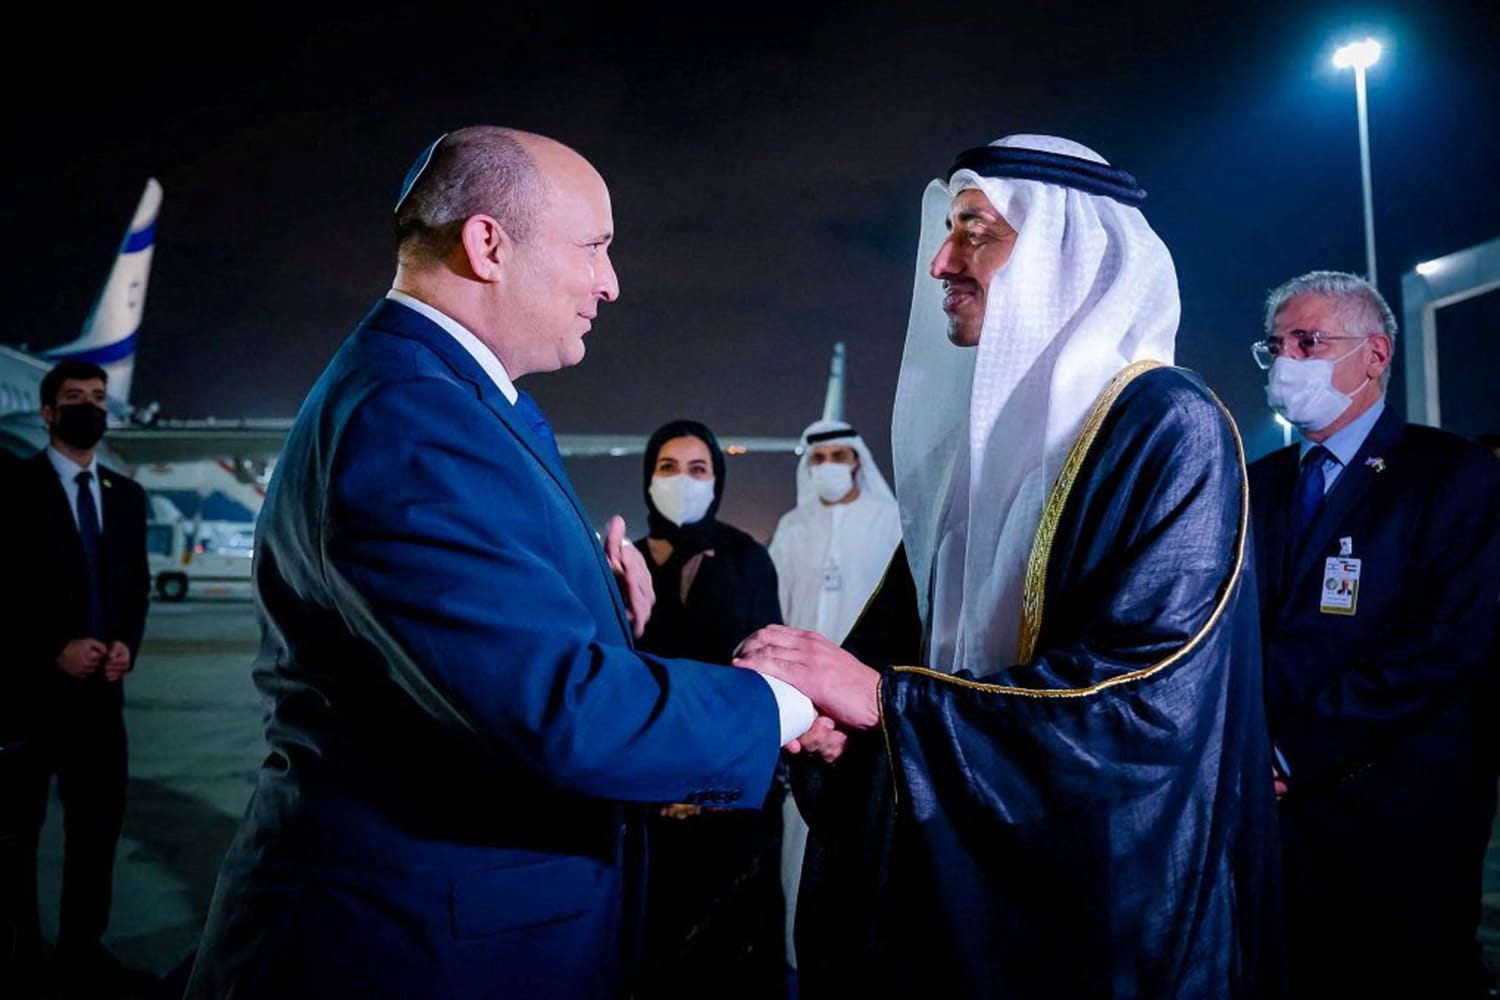 Israel’s leader makes landmark trip to UAE as Iran fears help old foes forge closer ties